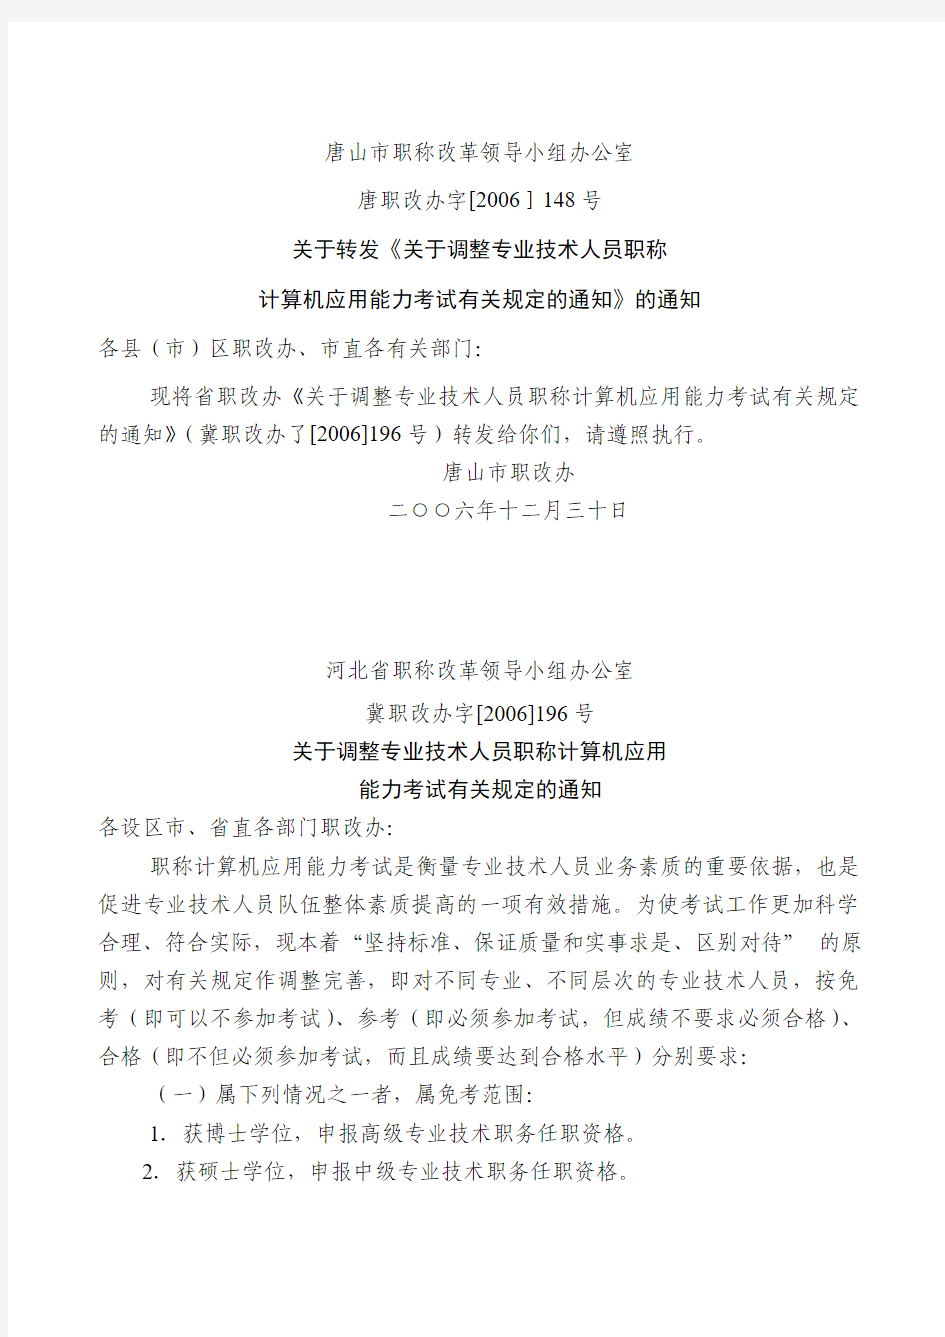 唐山市职称改革领导小组办公室